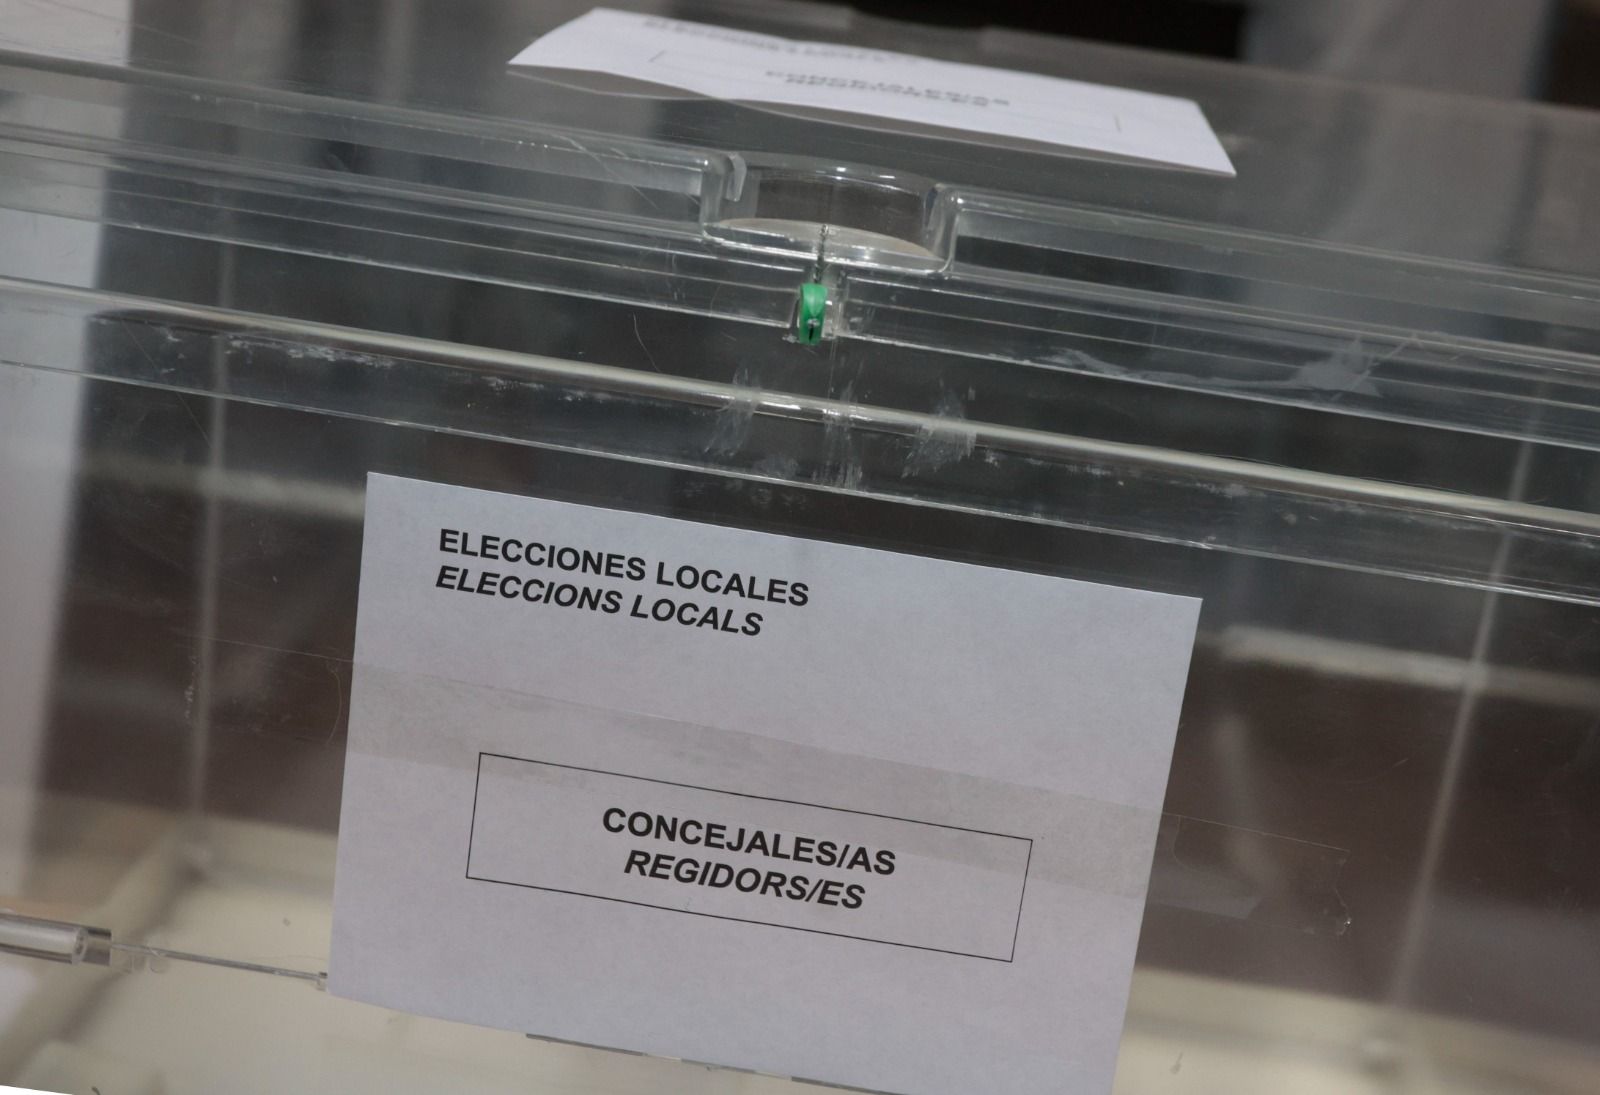 Dispositivo de preparación para el 28M en el almacén electoral de Delegación de Gobierno